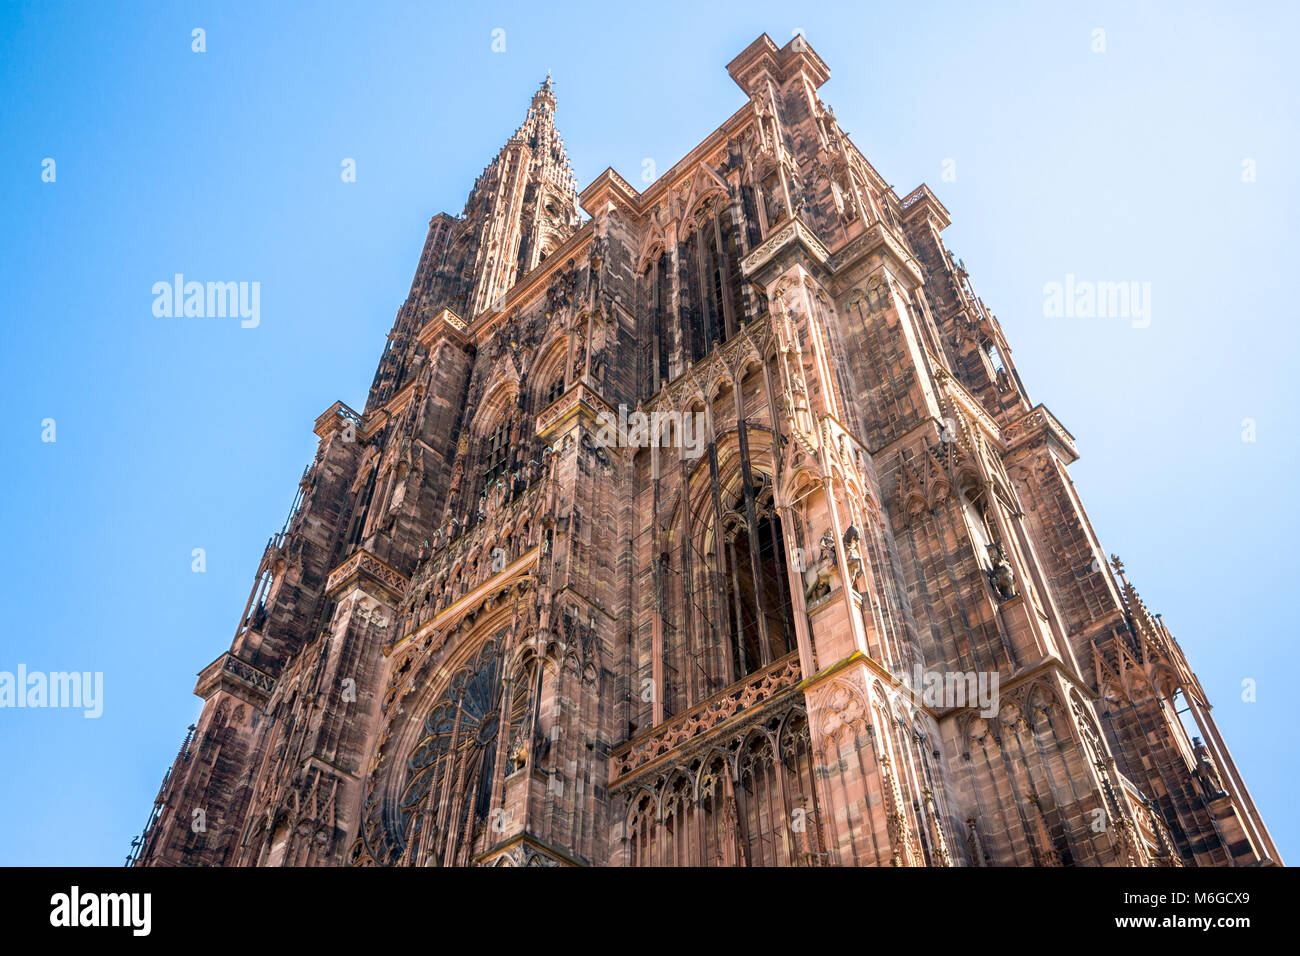 La Cattedrale di Nostra Signora di Strasburgo (Notre Dame), una cattedrale cattolica romana a Strasburgo, Alsazia, Francia. Mondiali di edificio più alto dal 1647 a Foto Stock